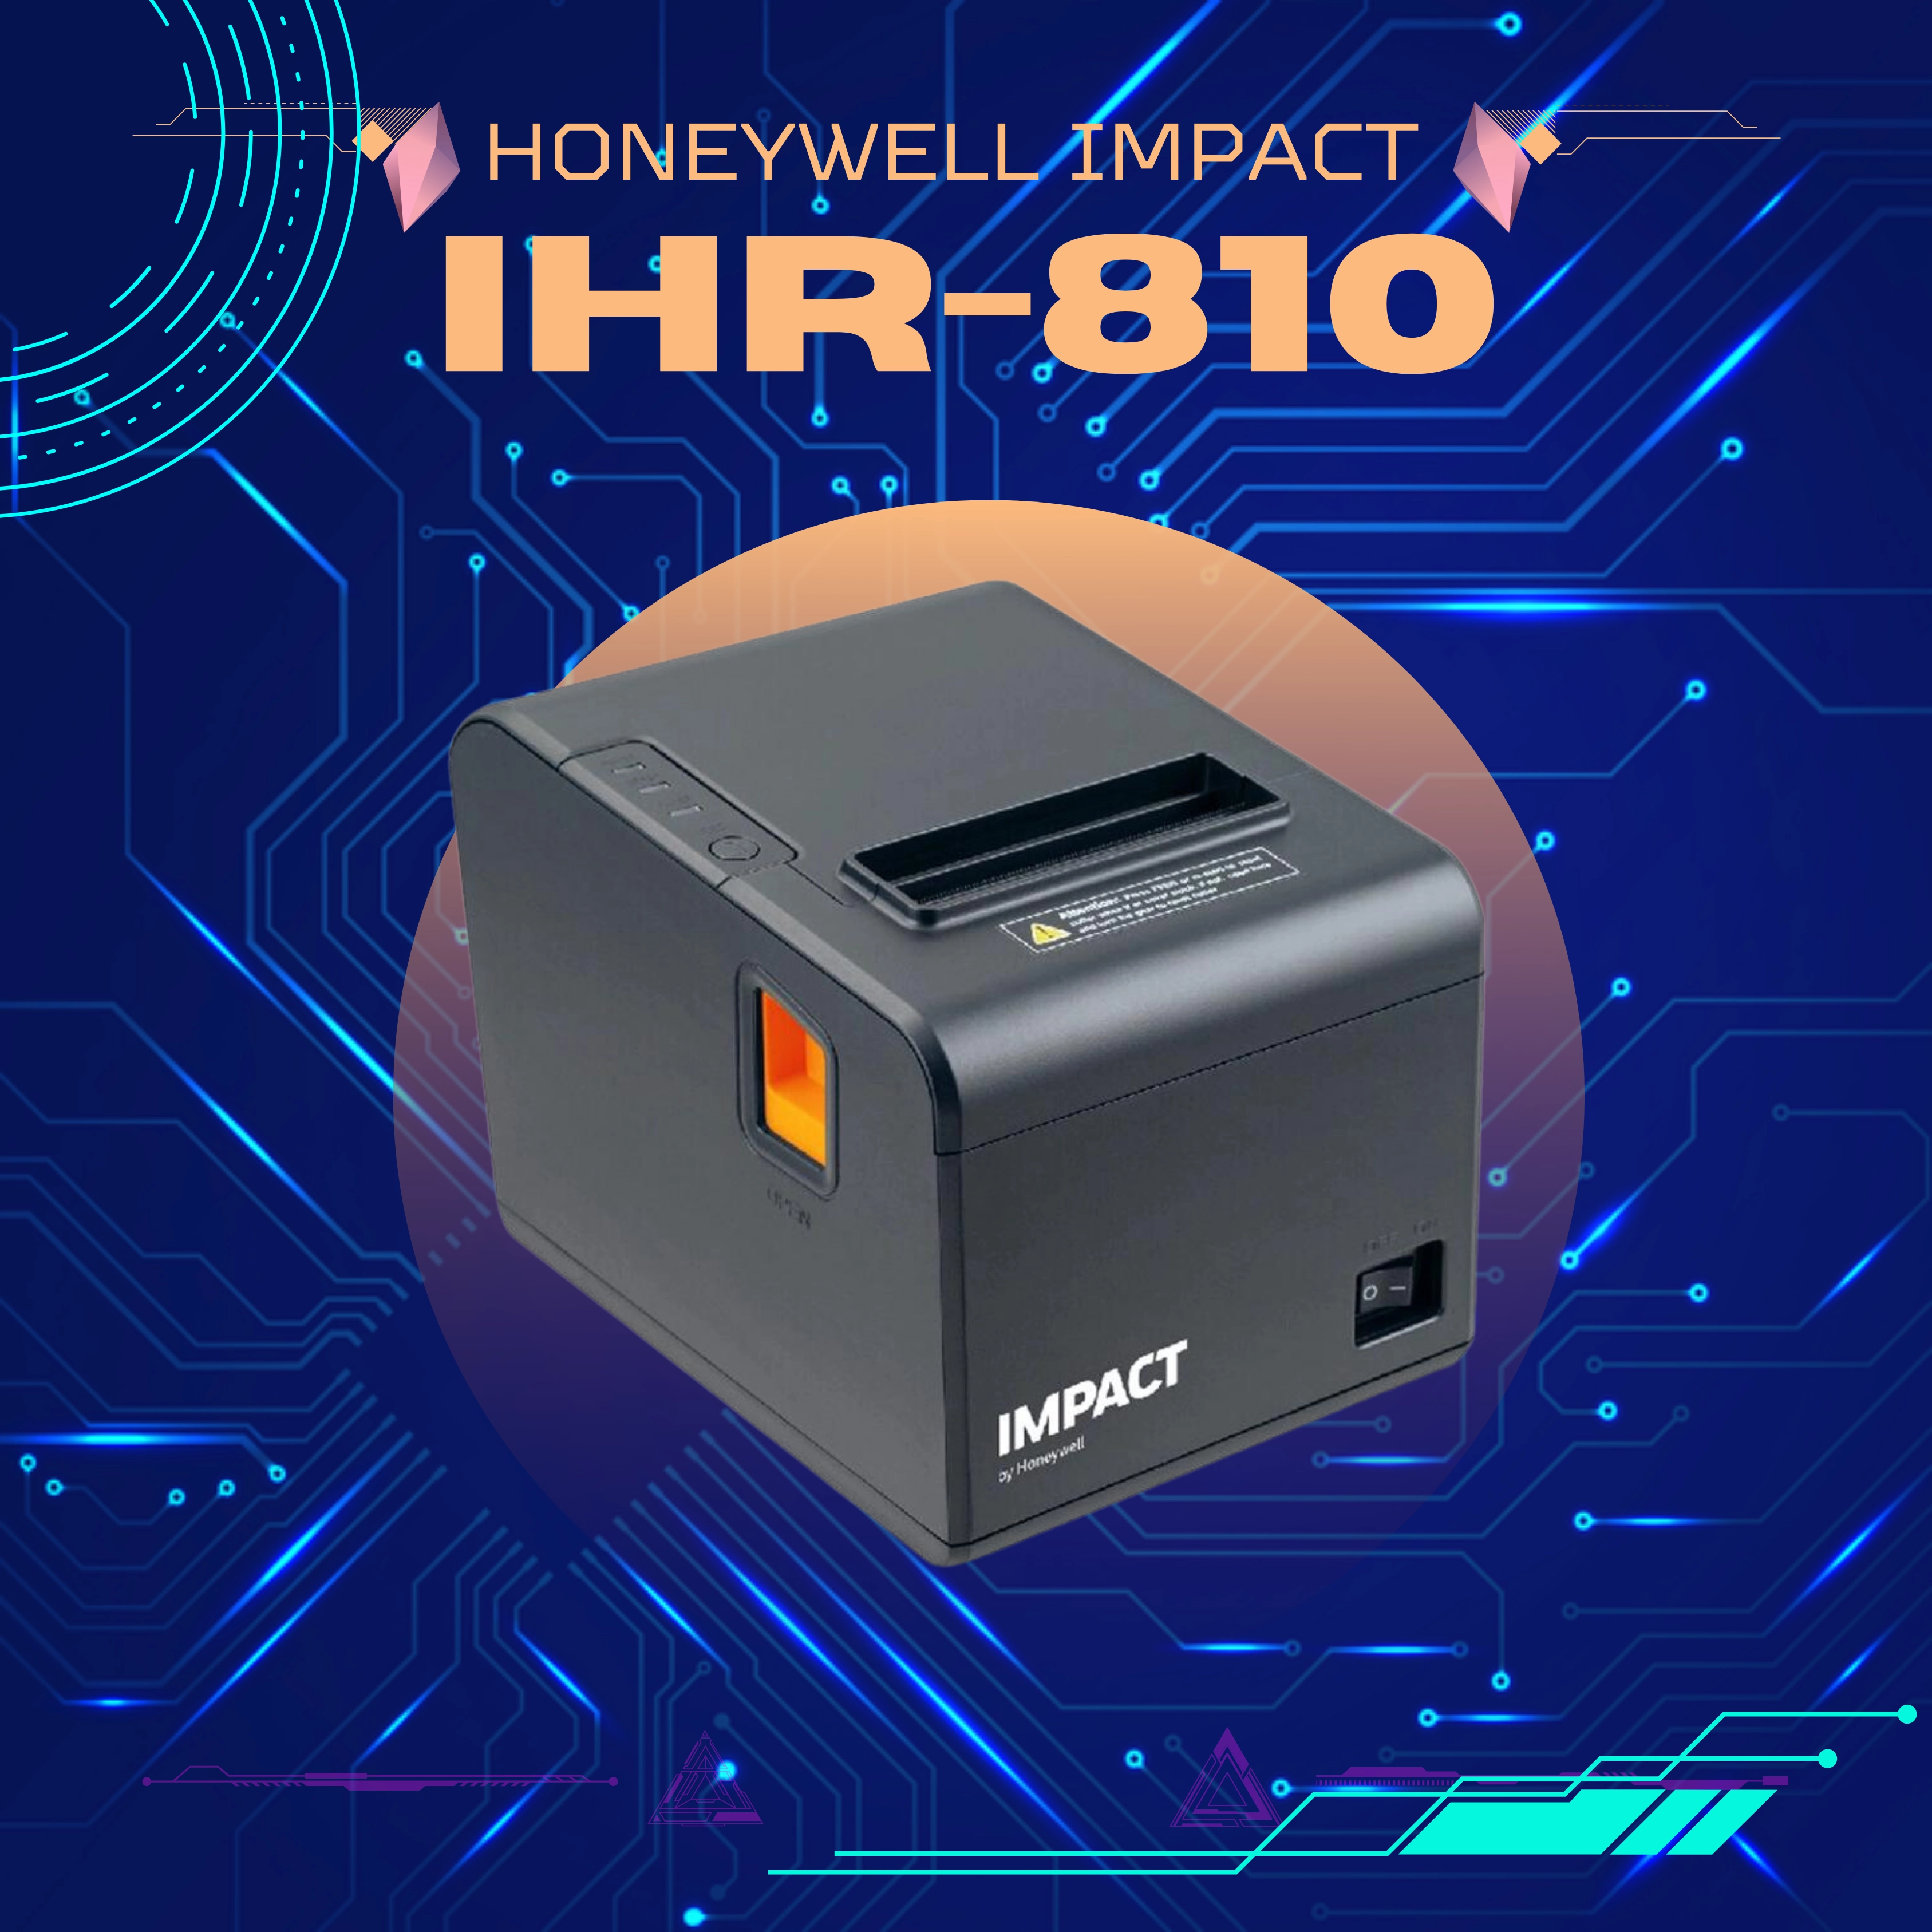 Honeywell-Impact-ihr-810-Printer-Barcode